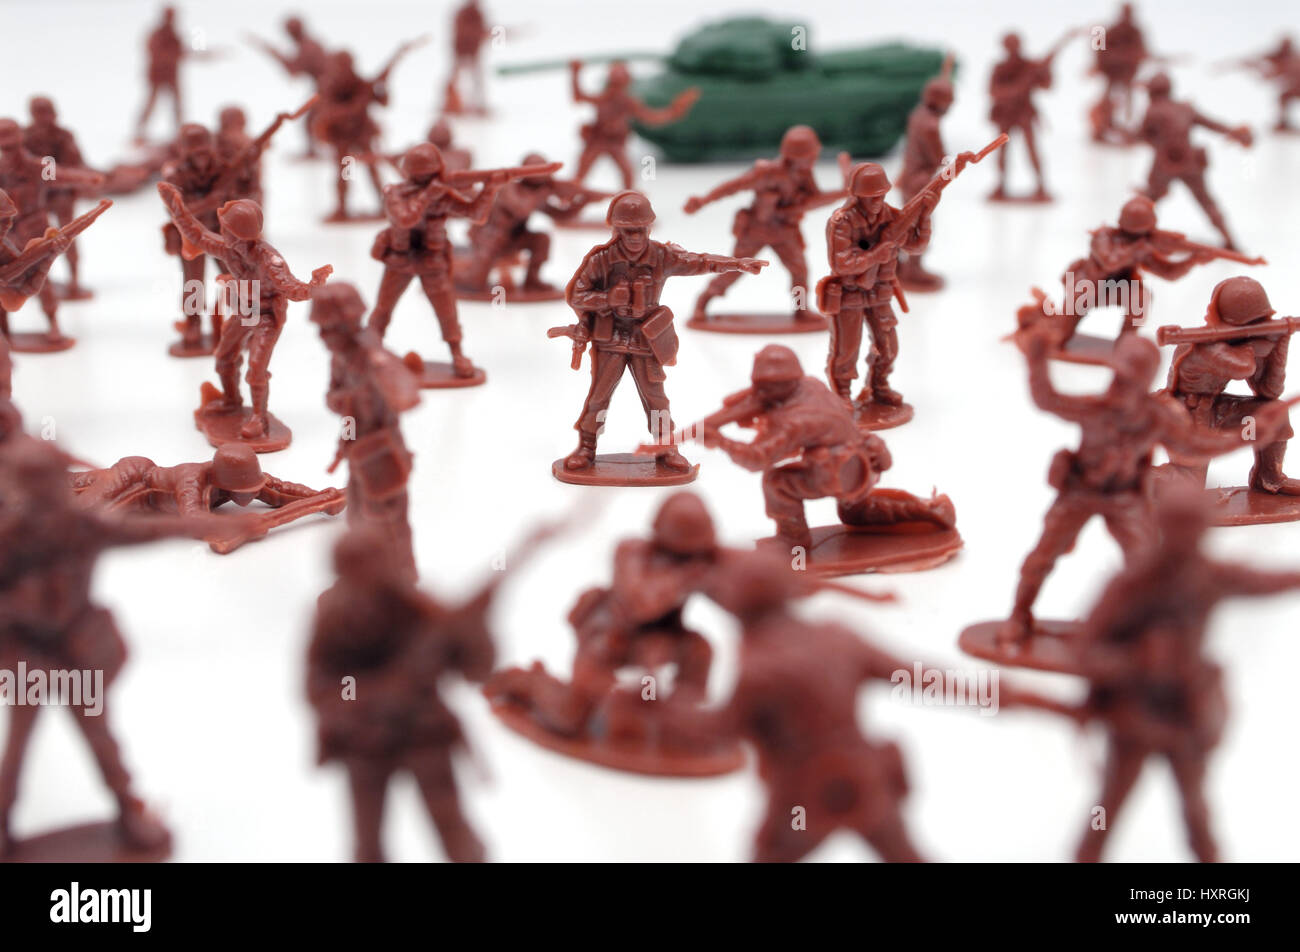 La guerre, guerres, jeu de guerre jeu de guerre, jeux de guerre, témoin, jeu de guerre, de stratégie, de figures, de figurines en plastique, des soldats, des chars, de l'armée, des armées, des jouets, des jouets, Krieg Banque D'Images